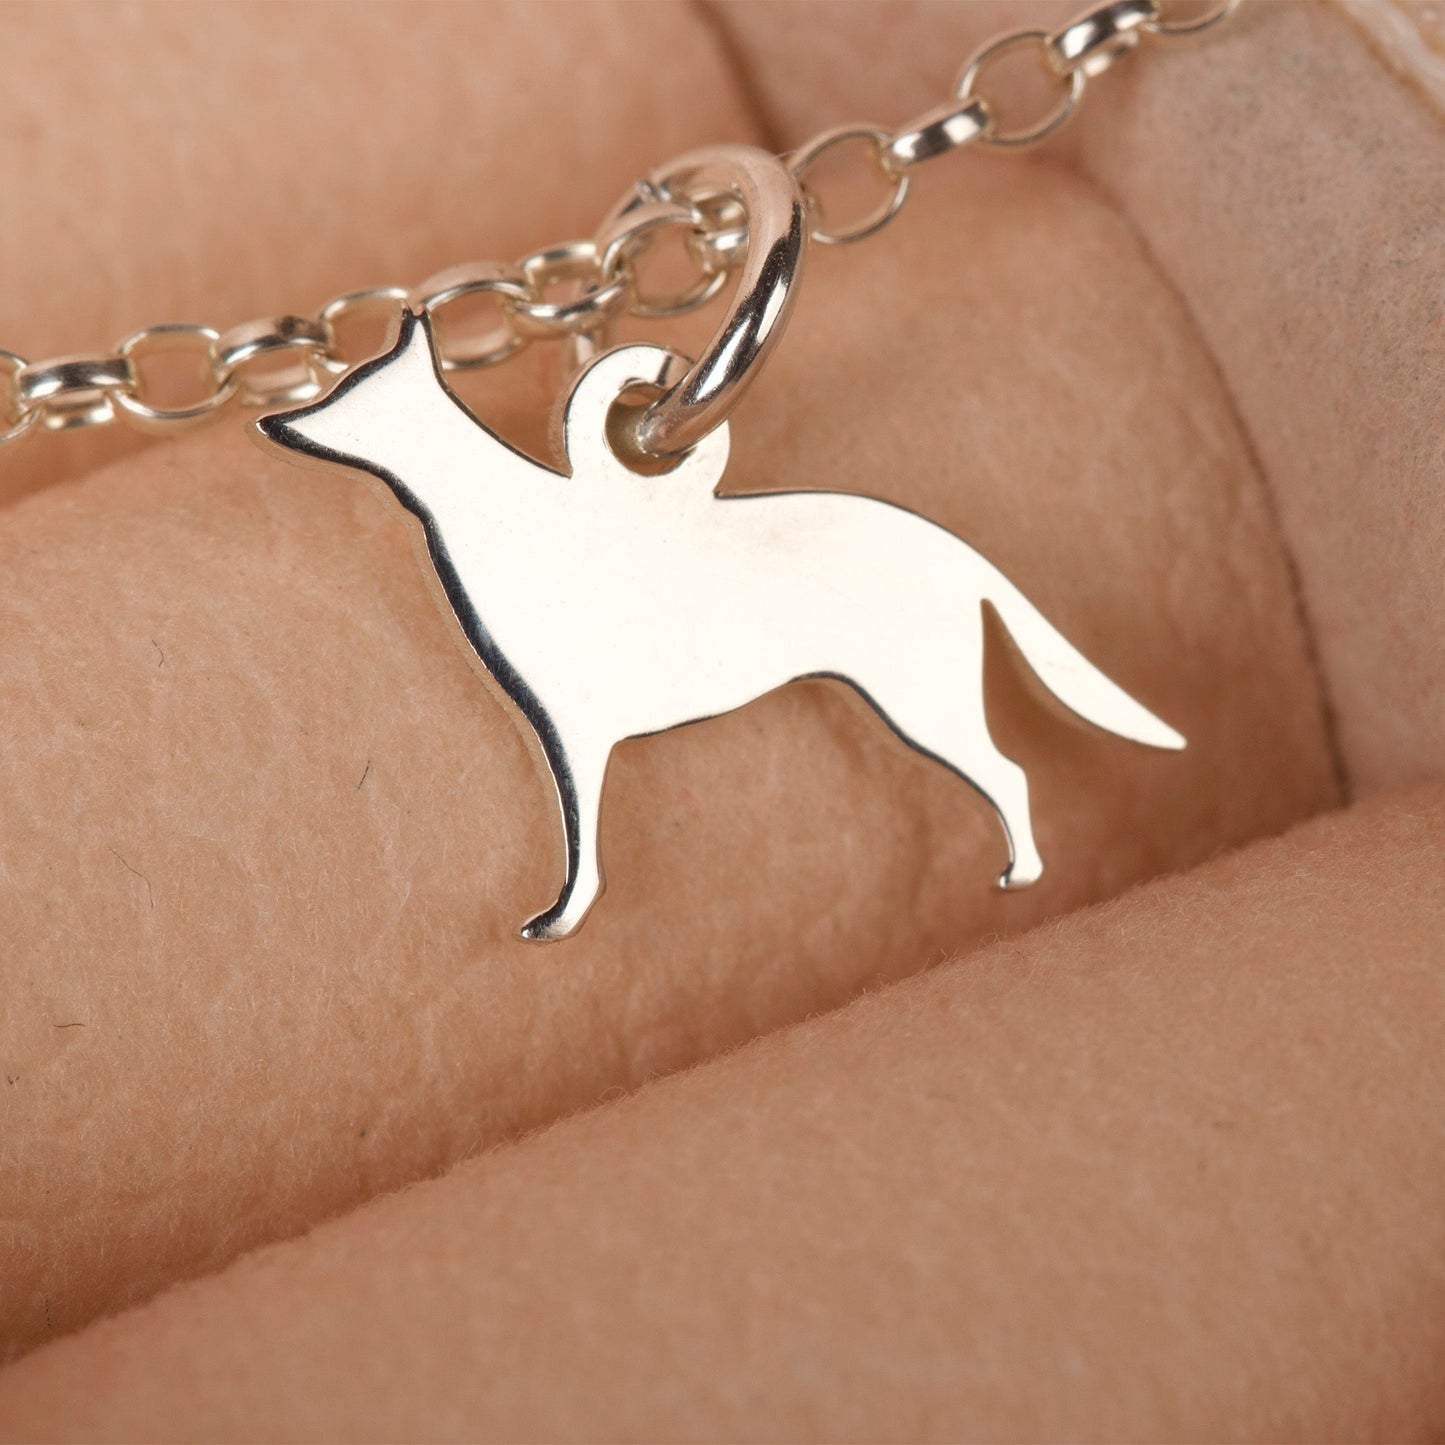 German Shepherd Silhouette Chain Bracelet - Personalised - Sterling Silver - MYLEE London